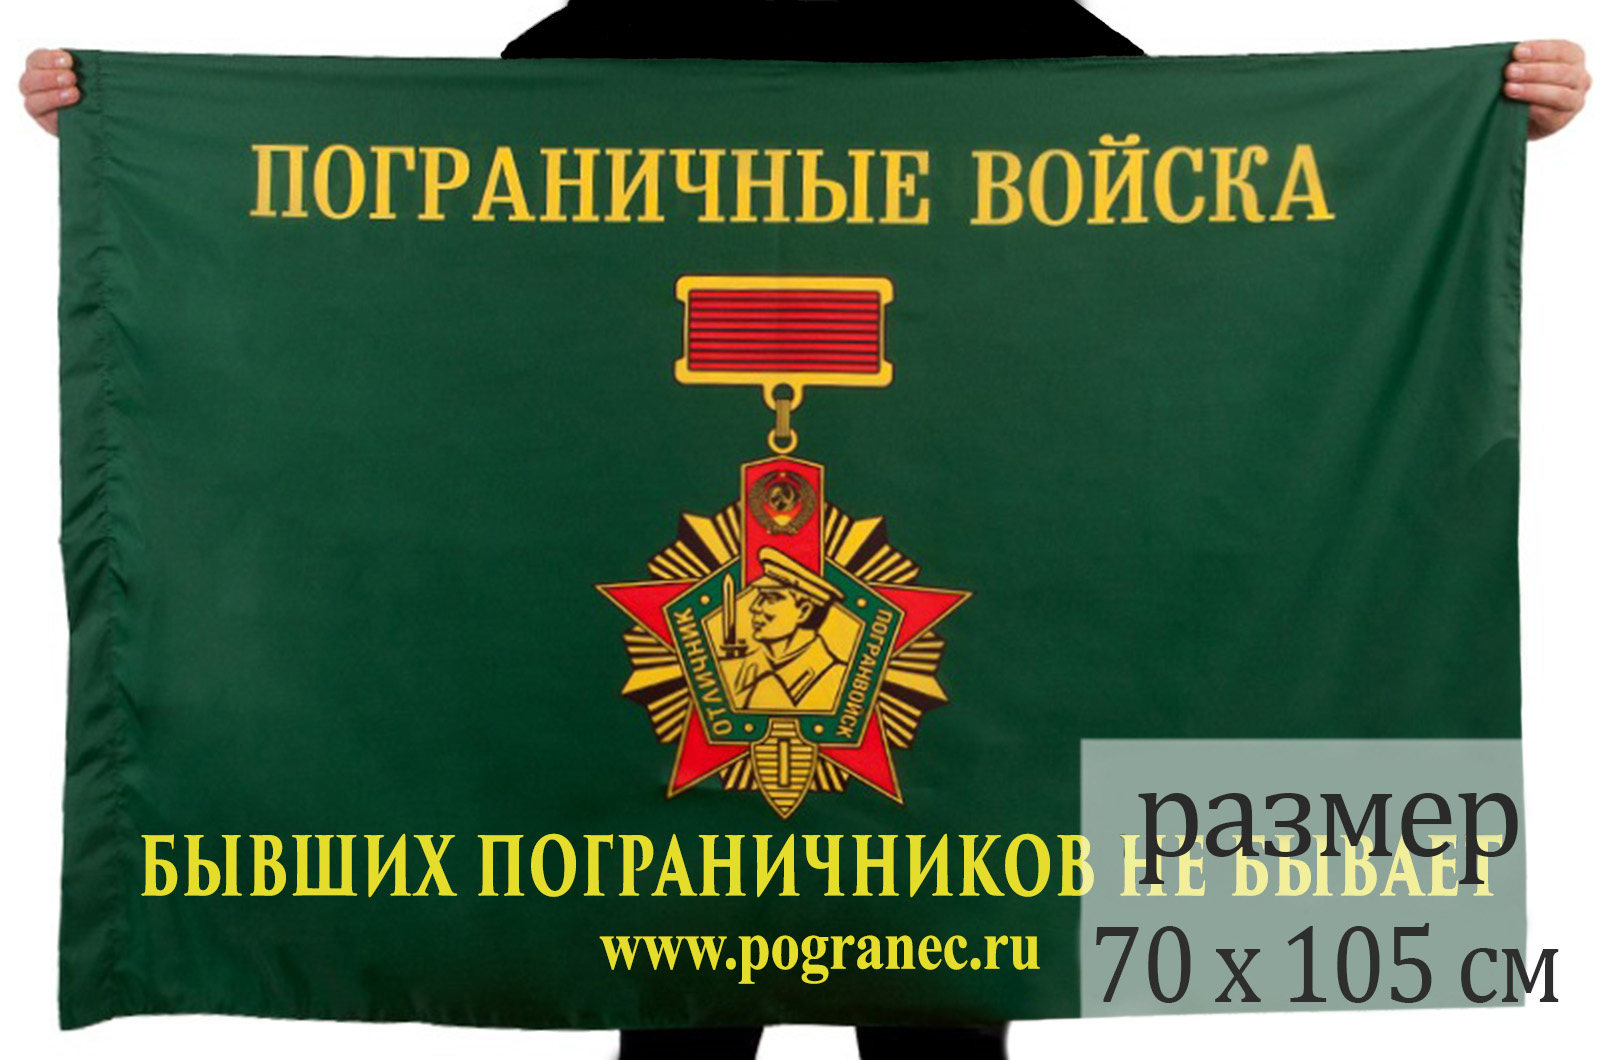 Заказать флаг ПВ "Бывших пограничников не бывает" в Военпро с доставкой